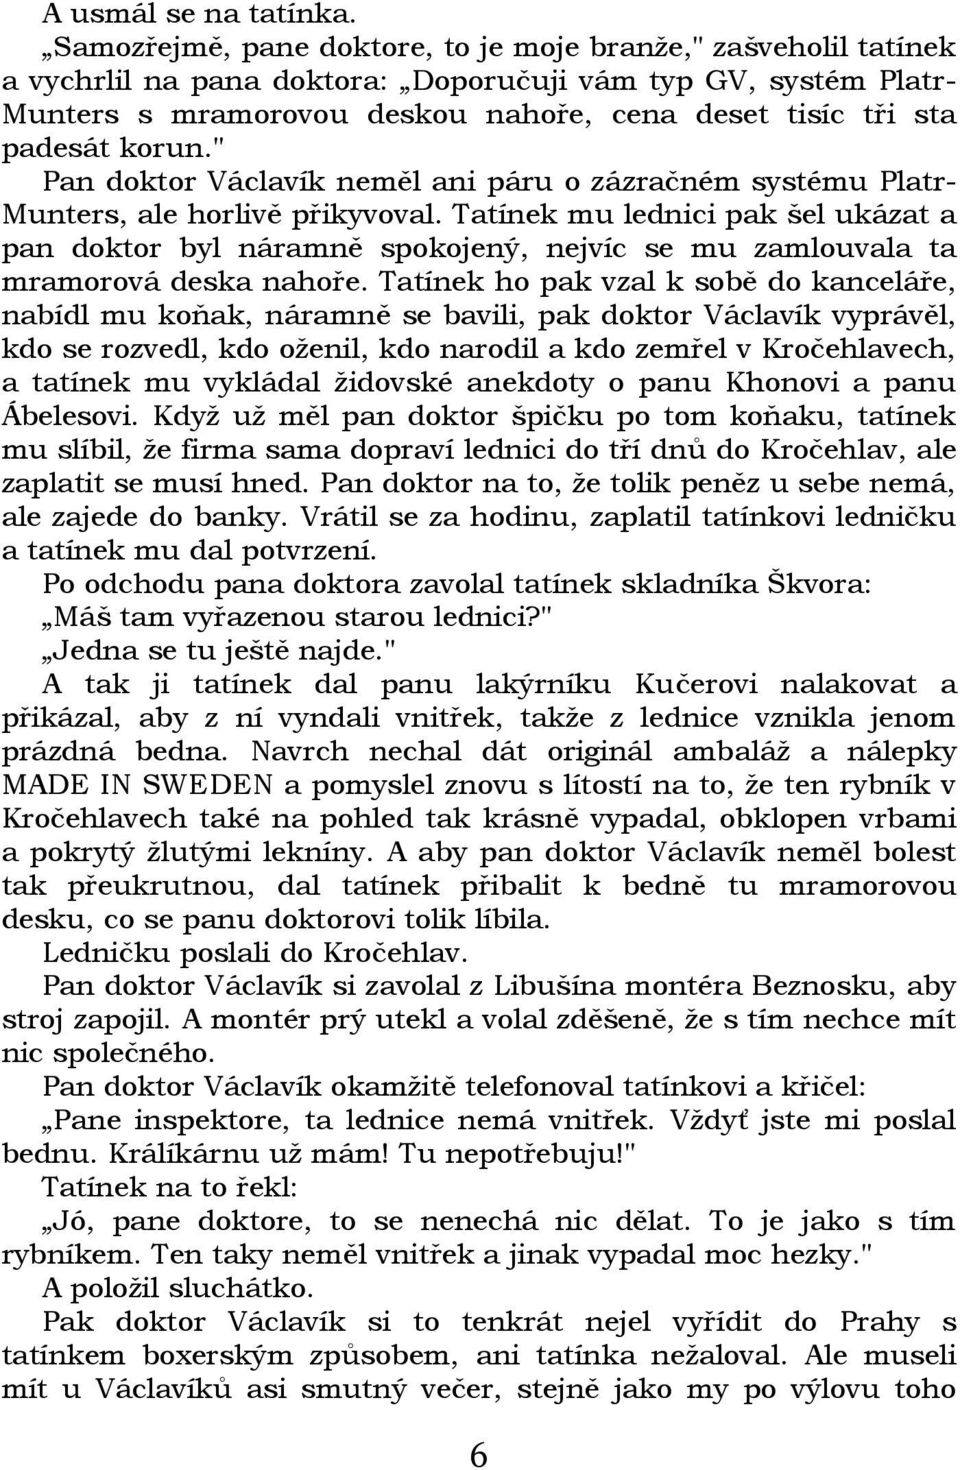 korun." Pan doktor Václavík neměl ani páru o zázračném systému Platr- Munters, ale horlivě přikyvoval.